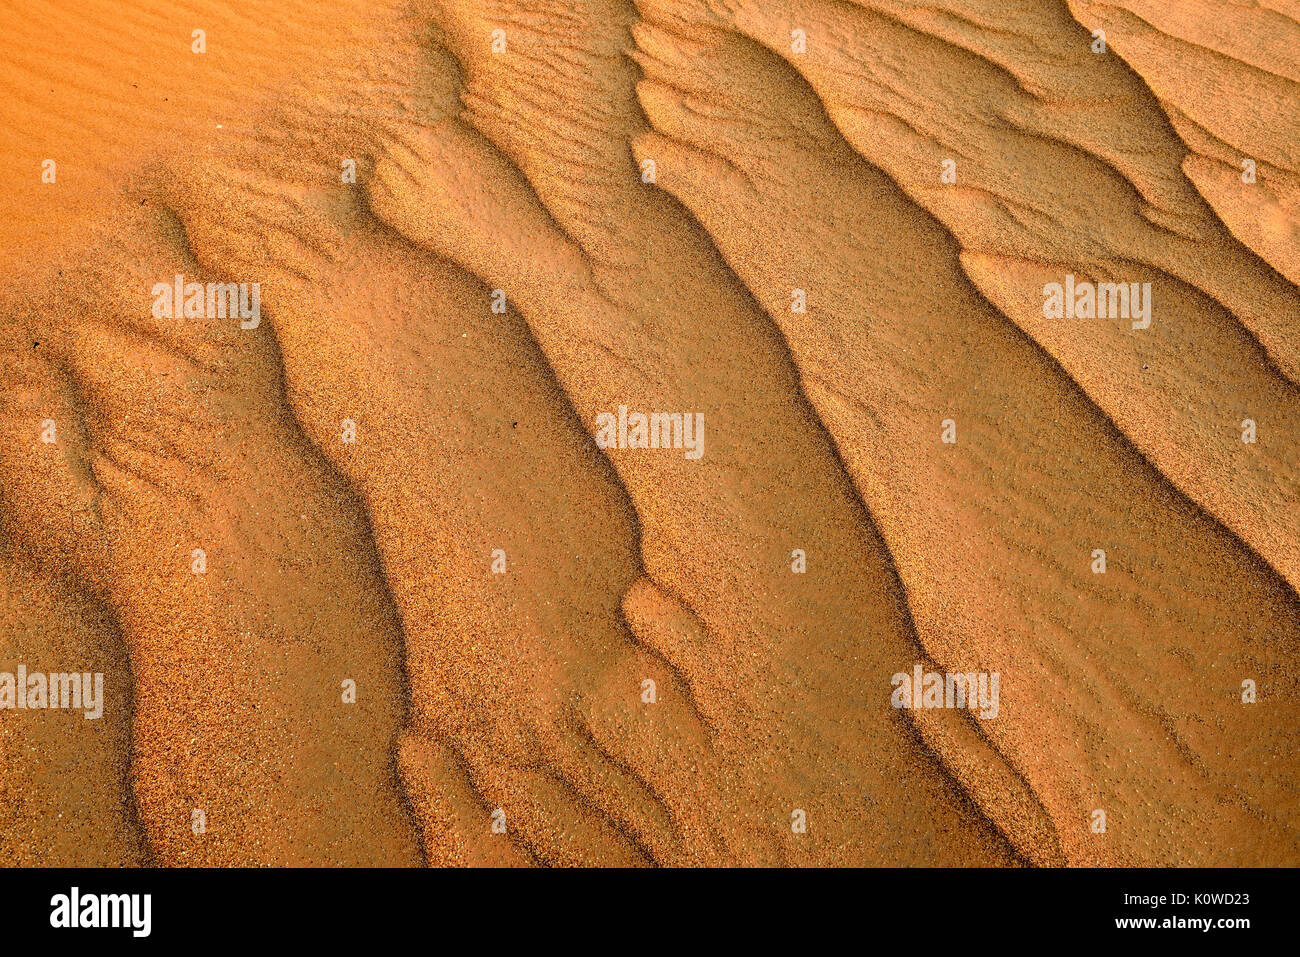 Las ondulaciones de la arena del desierto al Khaluf sanddunes, Omán, Arabia Foto de stock